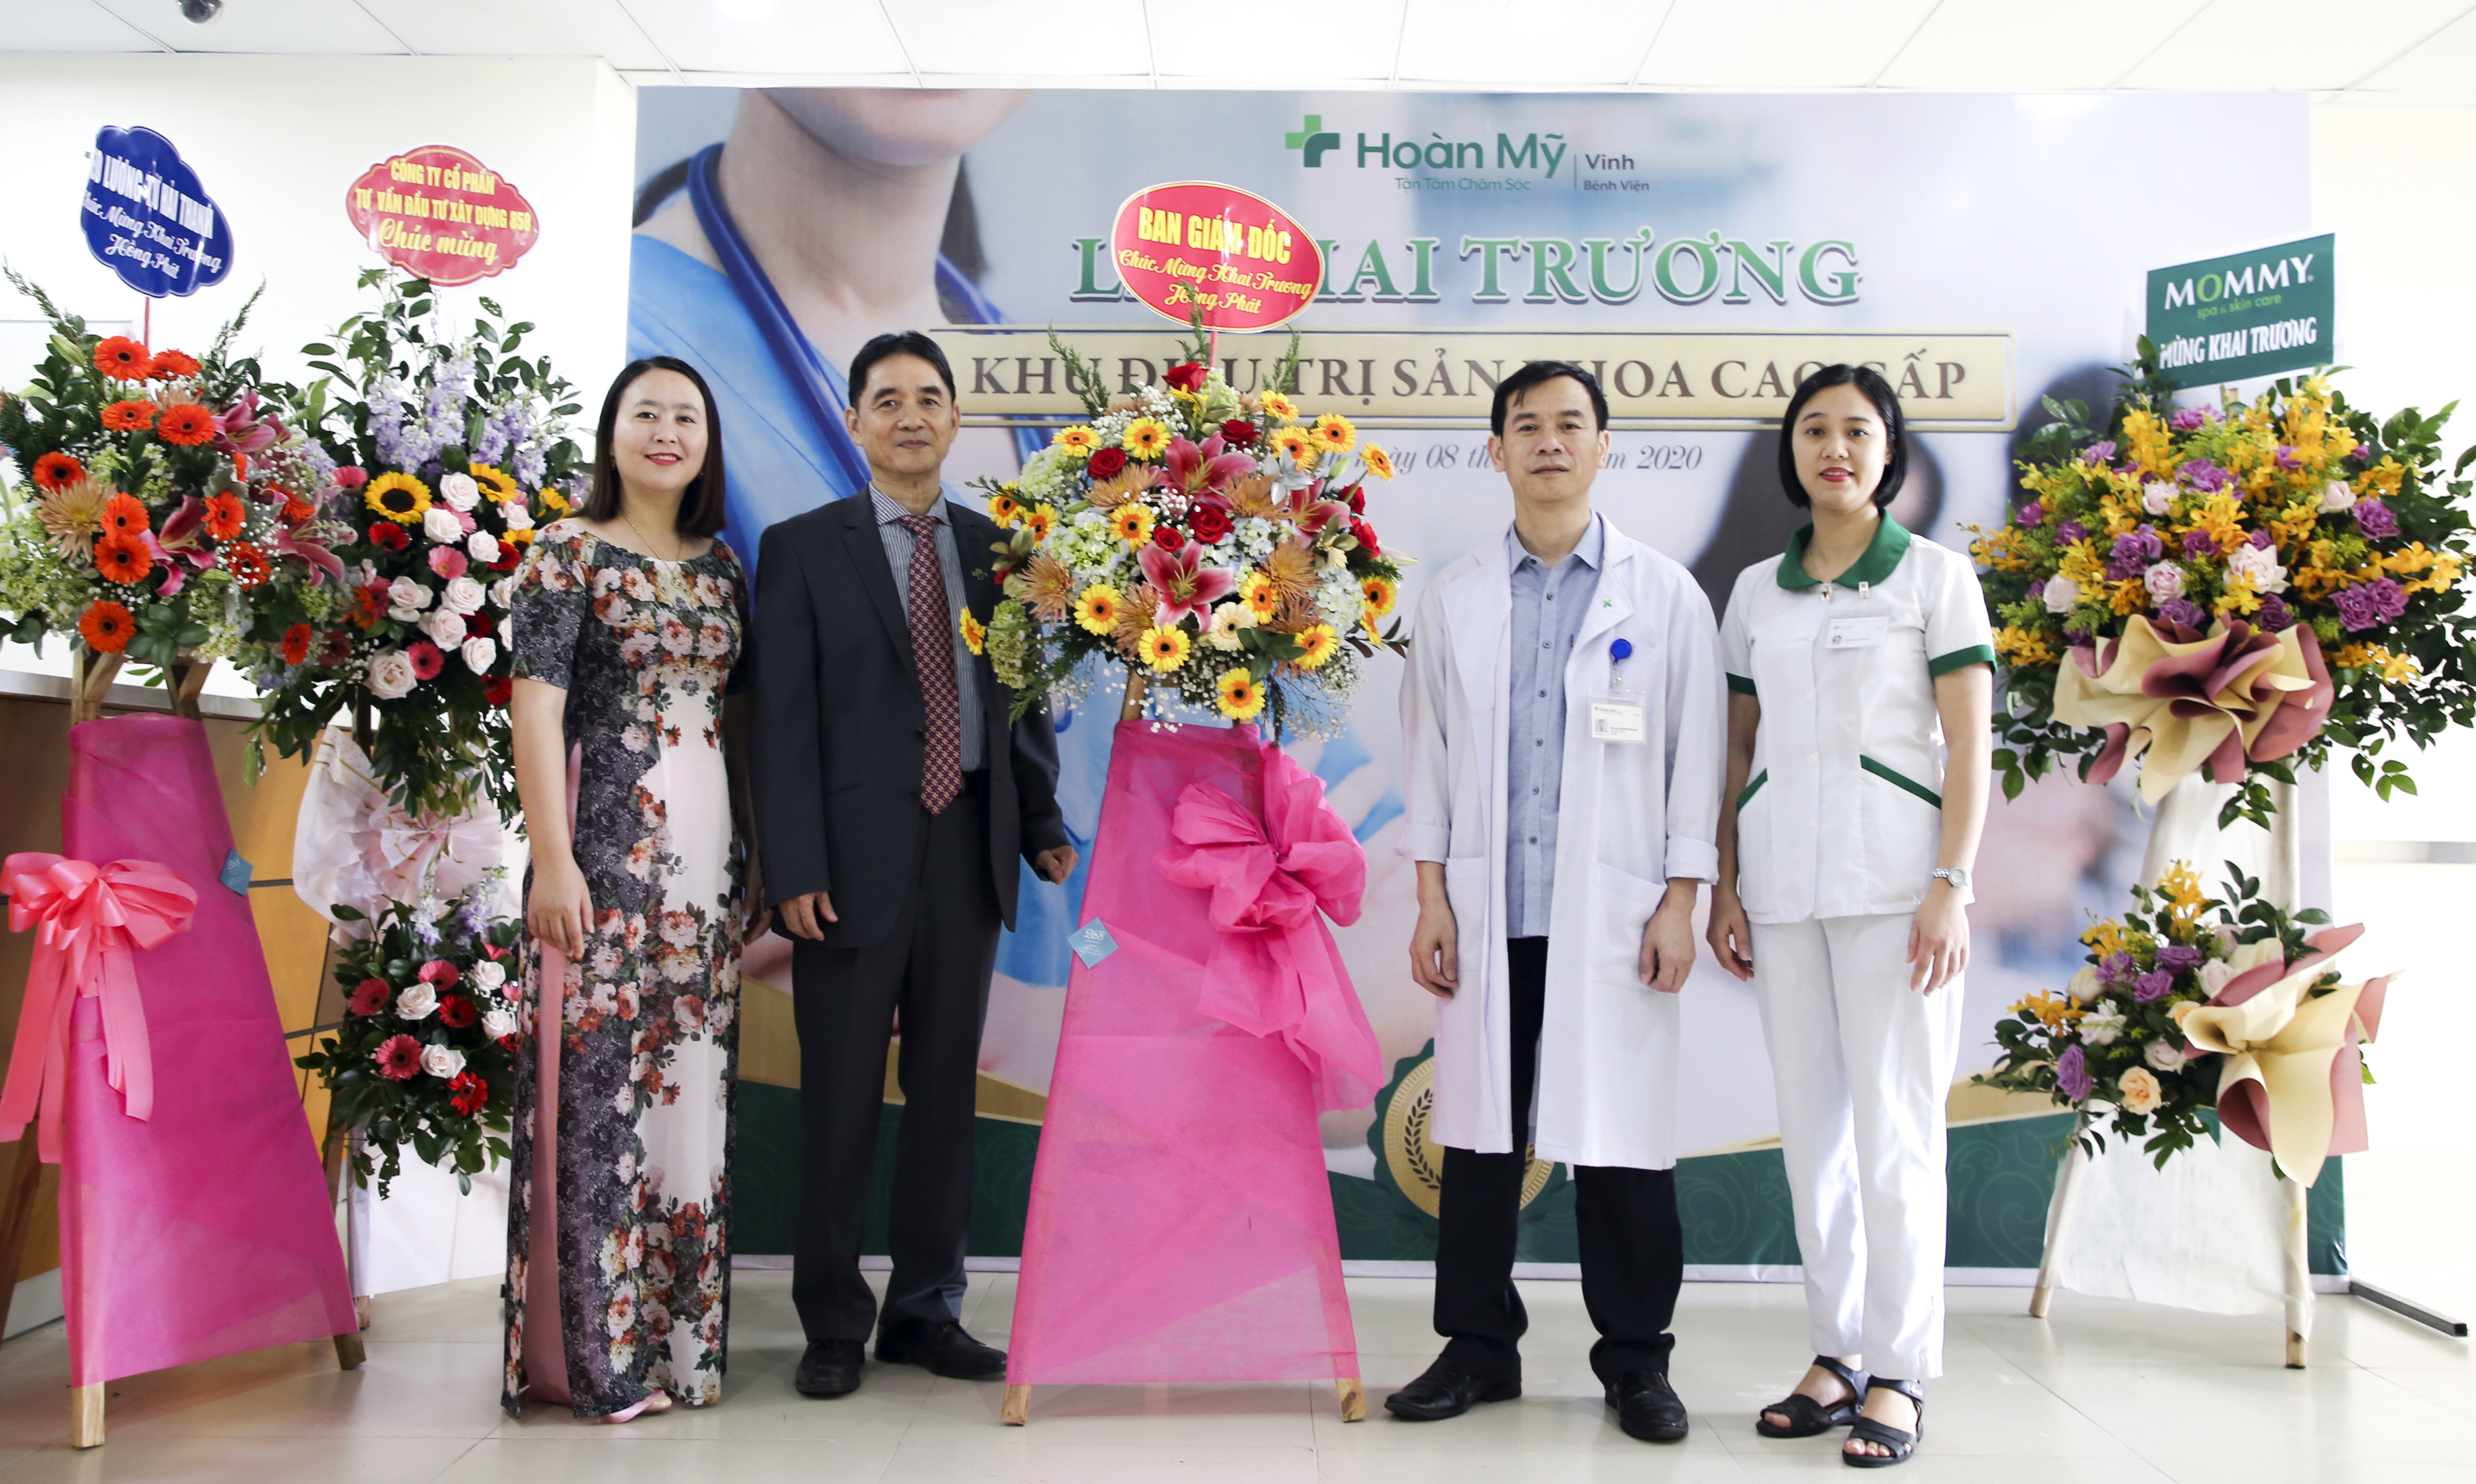 Bệnh viện Quốc tế Vinh khai trương Khu điều trị nội trú cao cấp Sản khoa. Ảnh: Kim Chung